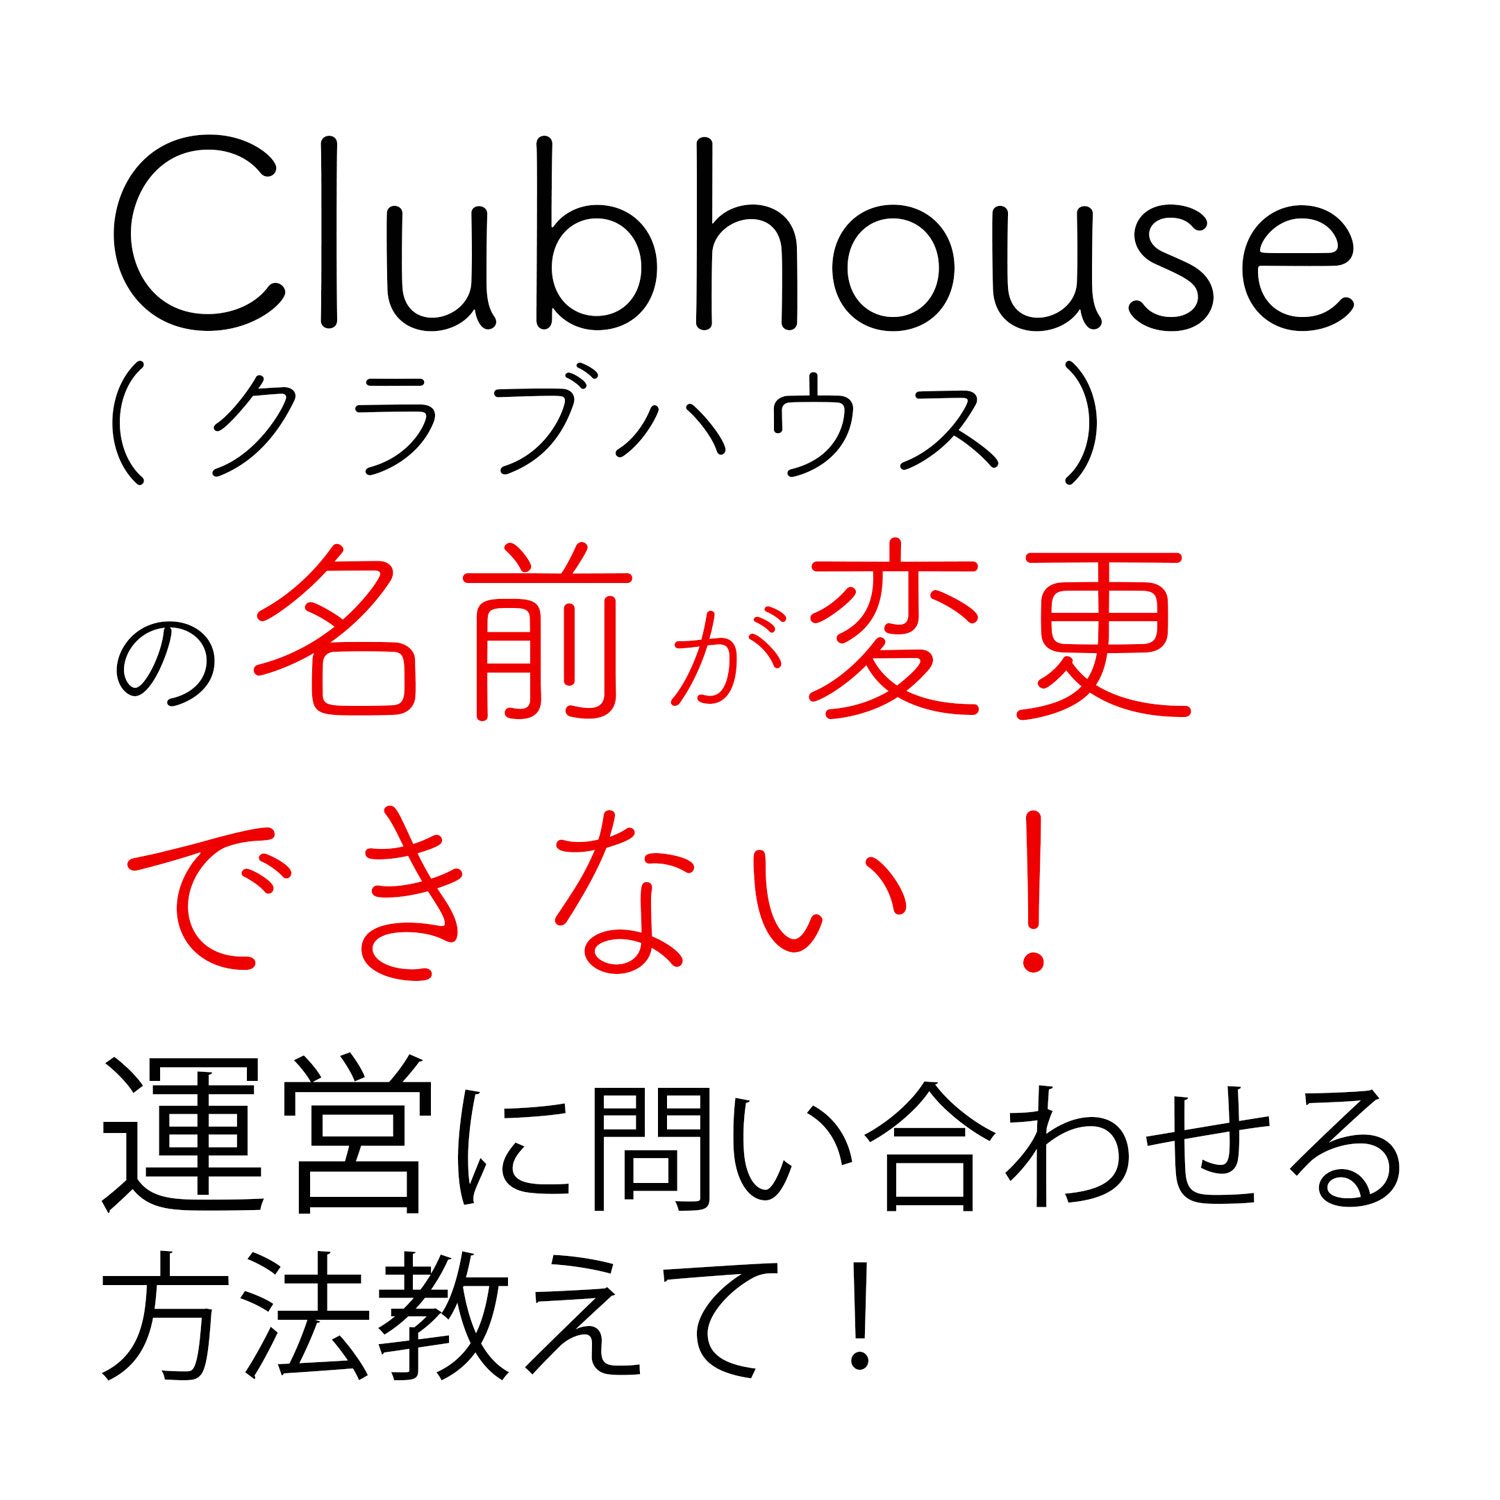 ハウス 名前 クラブ ジャングルポケット斉藤「ハウスクラブ始めました」 名前から間違い、Clubhouseで大混乱: